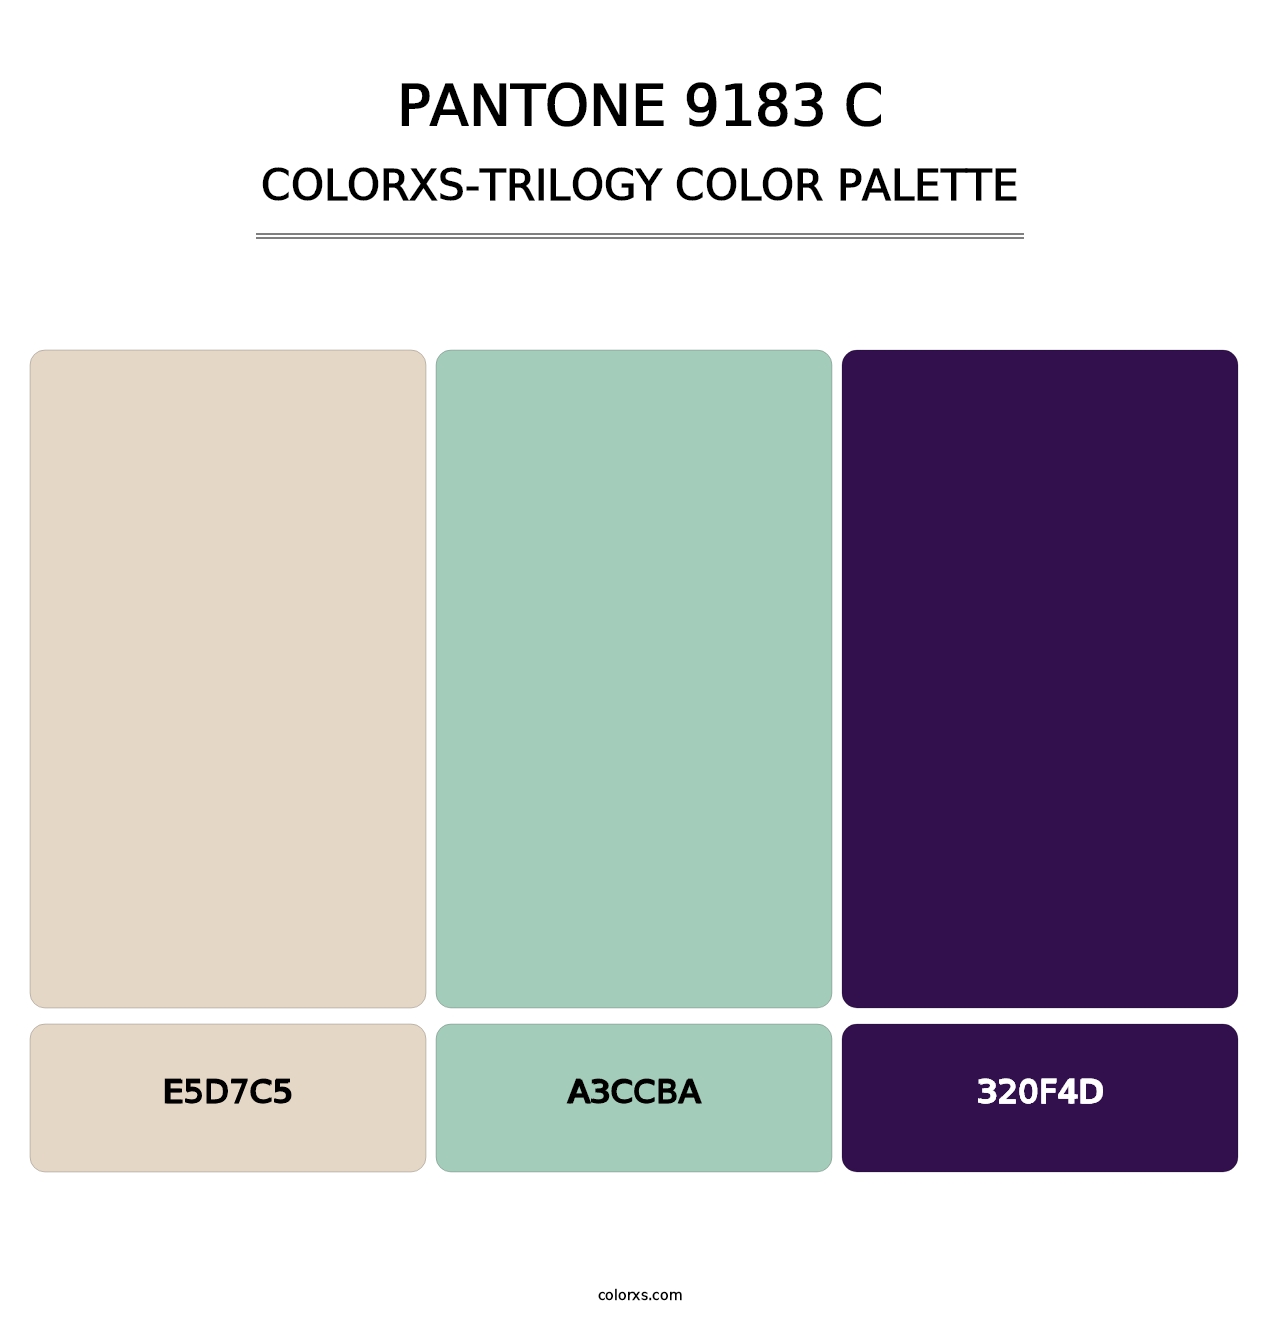 PANTONE 9183 C - Colorxs Trilogy Palette